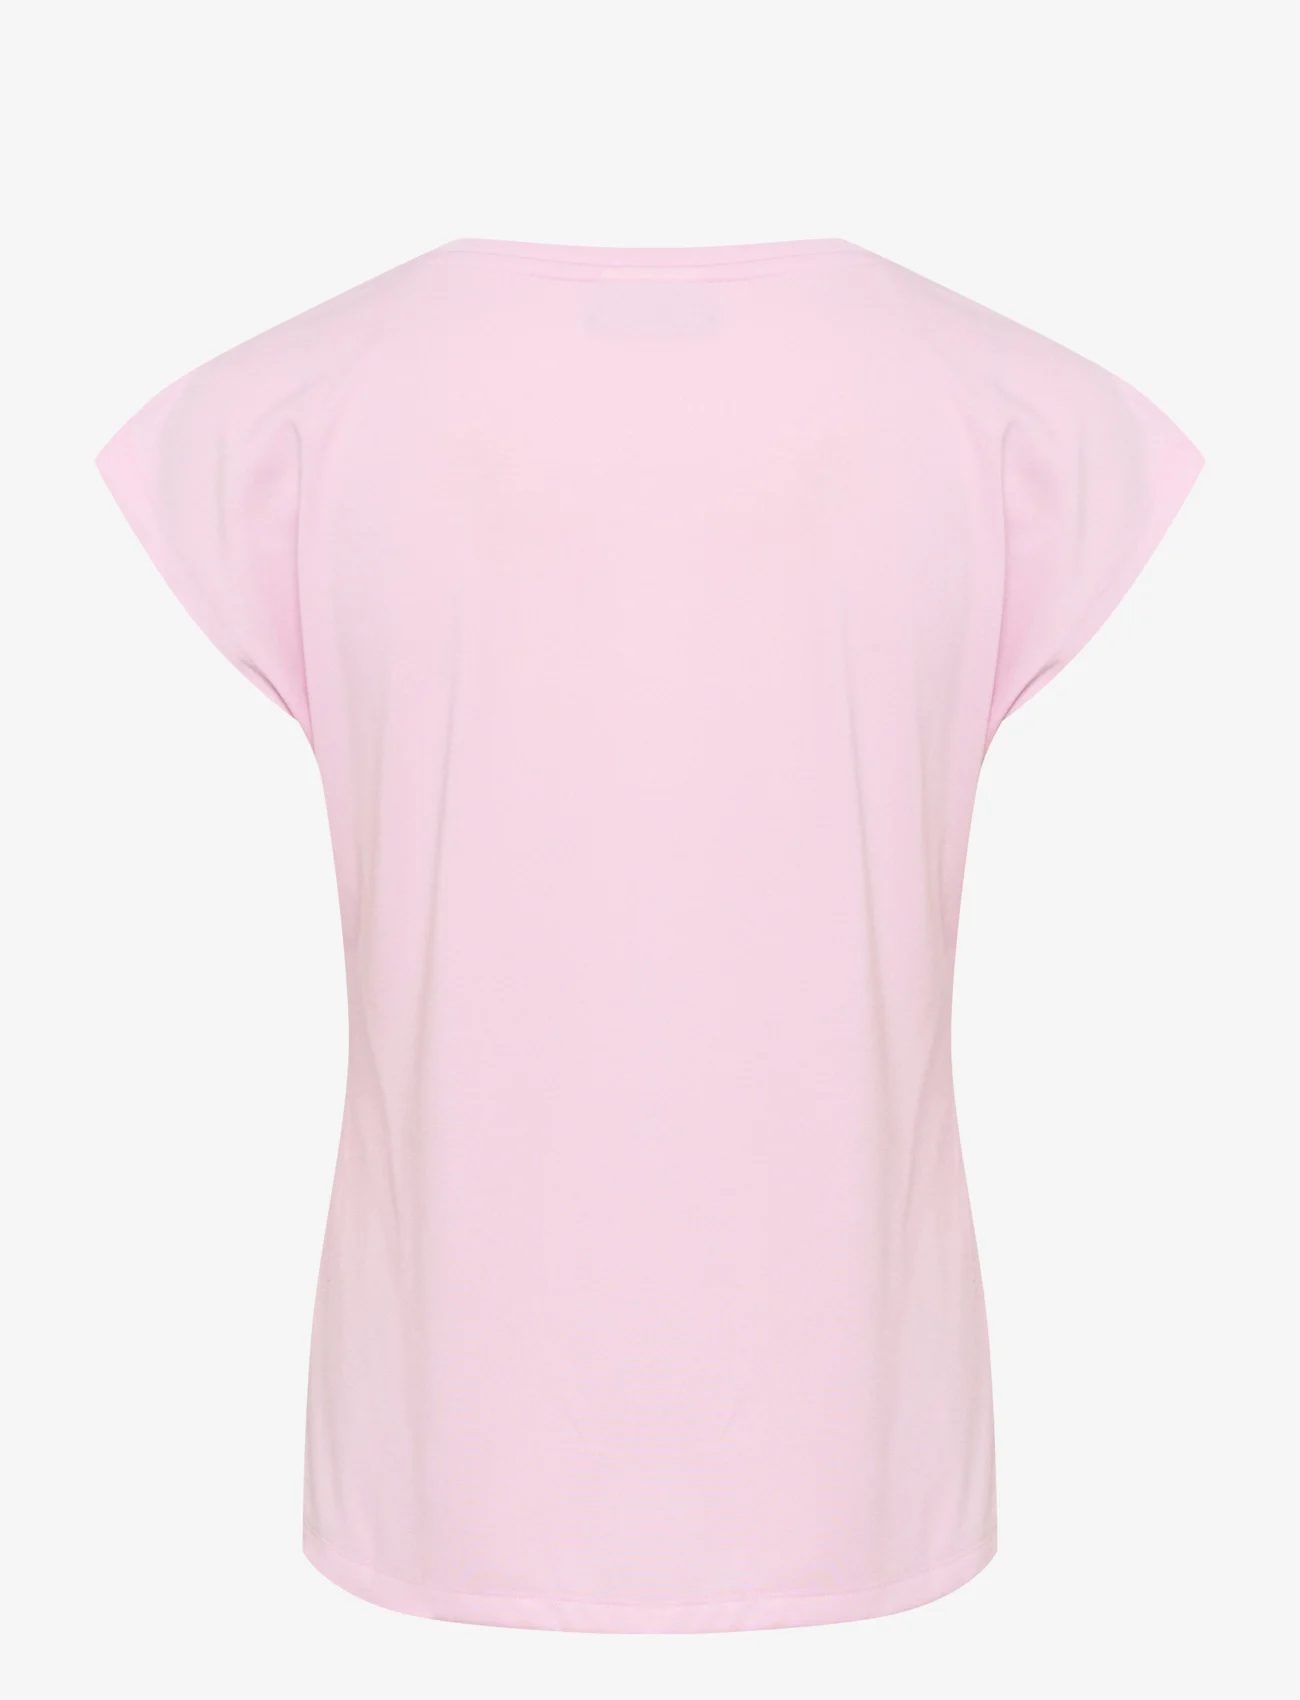 Kaffe - KAlise T-Shirt - laveste priser - pink mist - 1